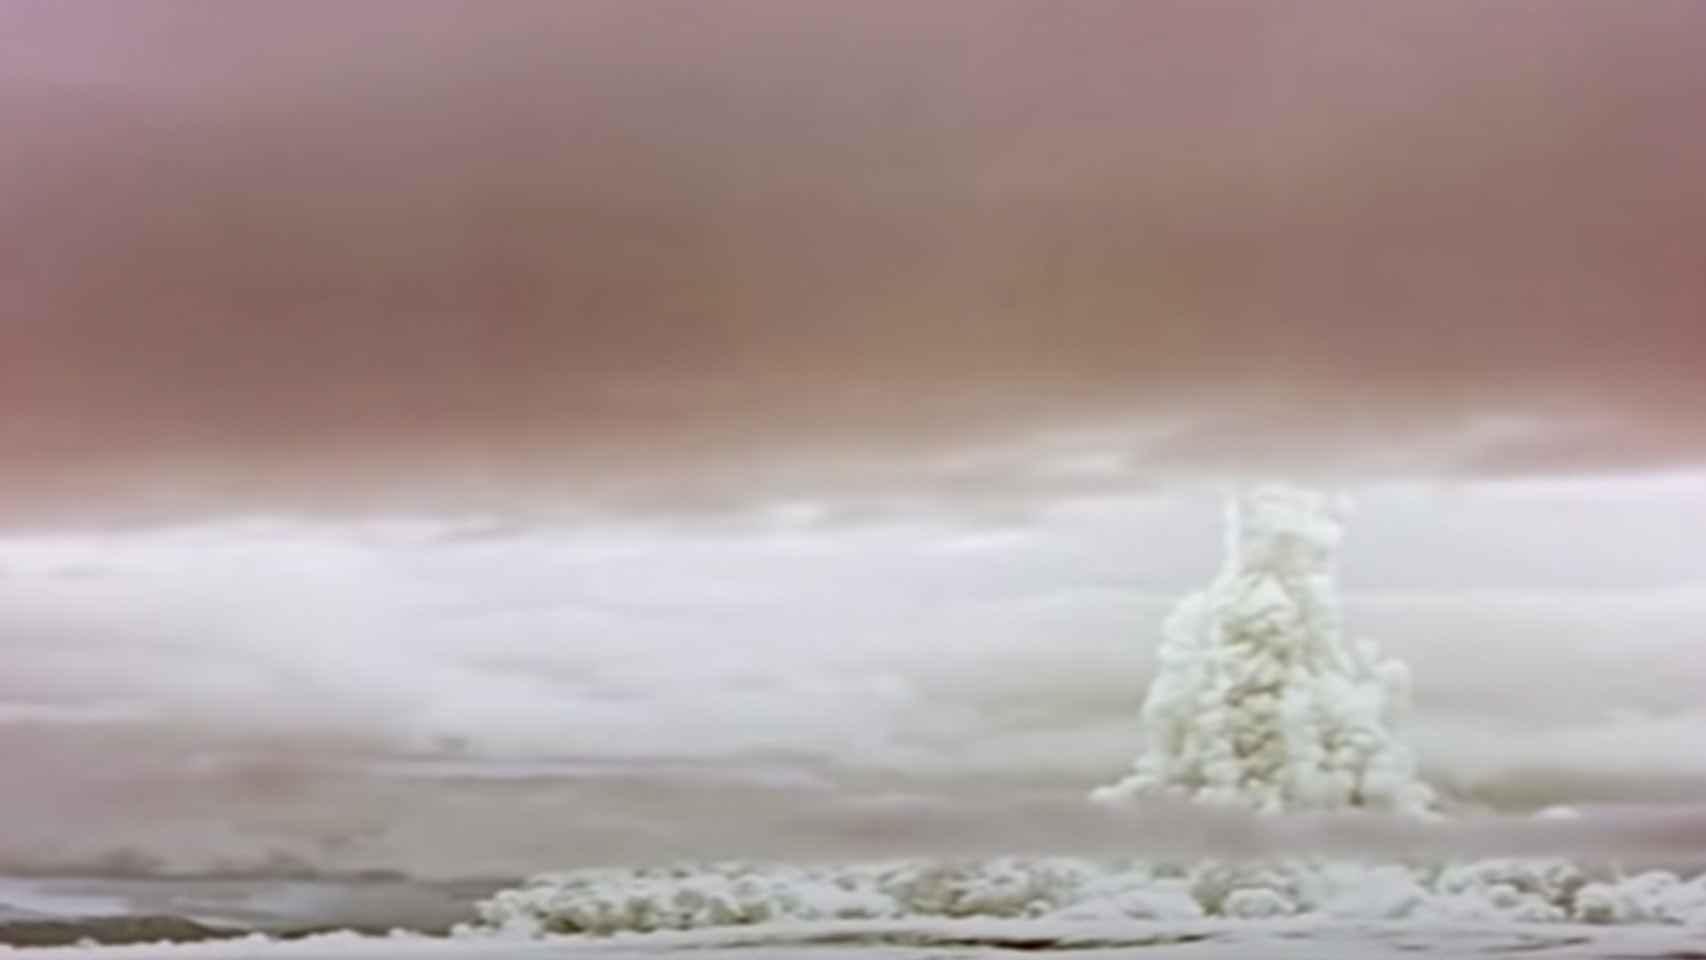 Explosión nuclear de la Bomba del Zar.